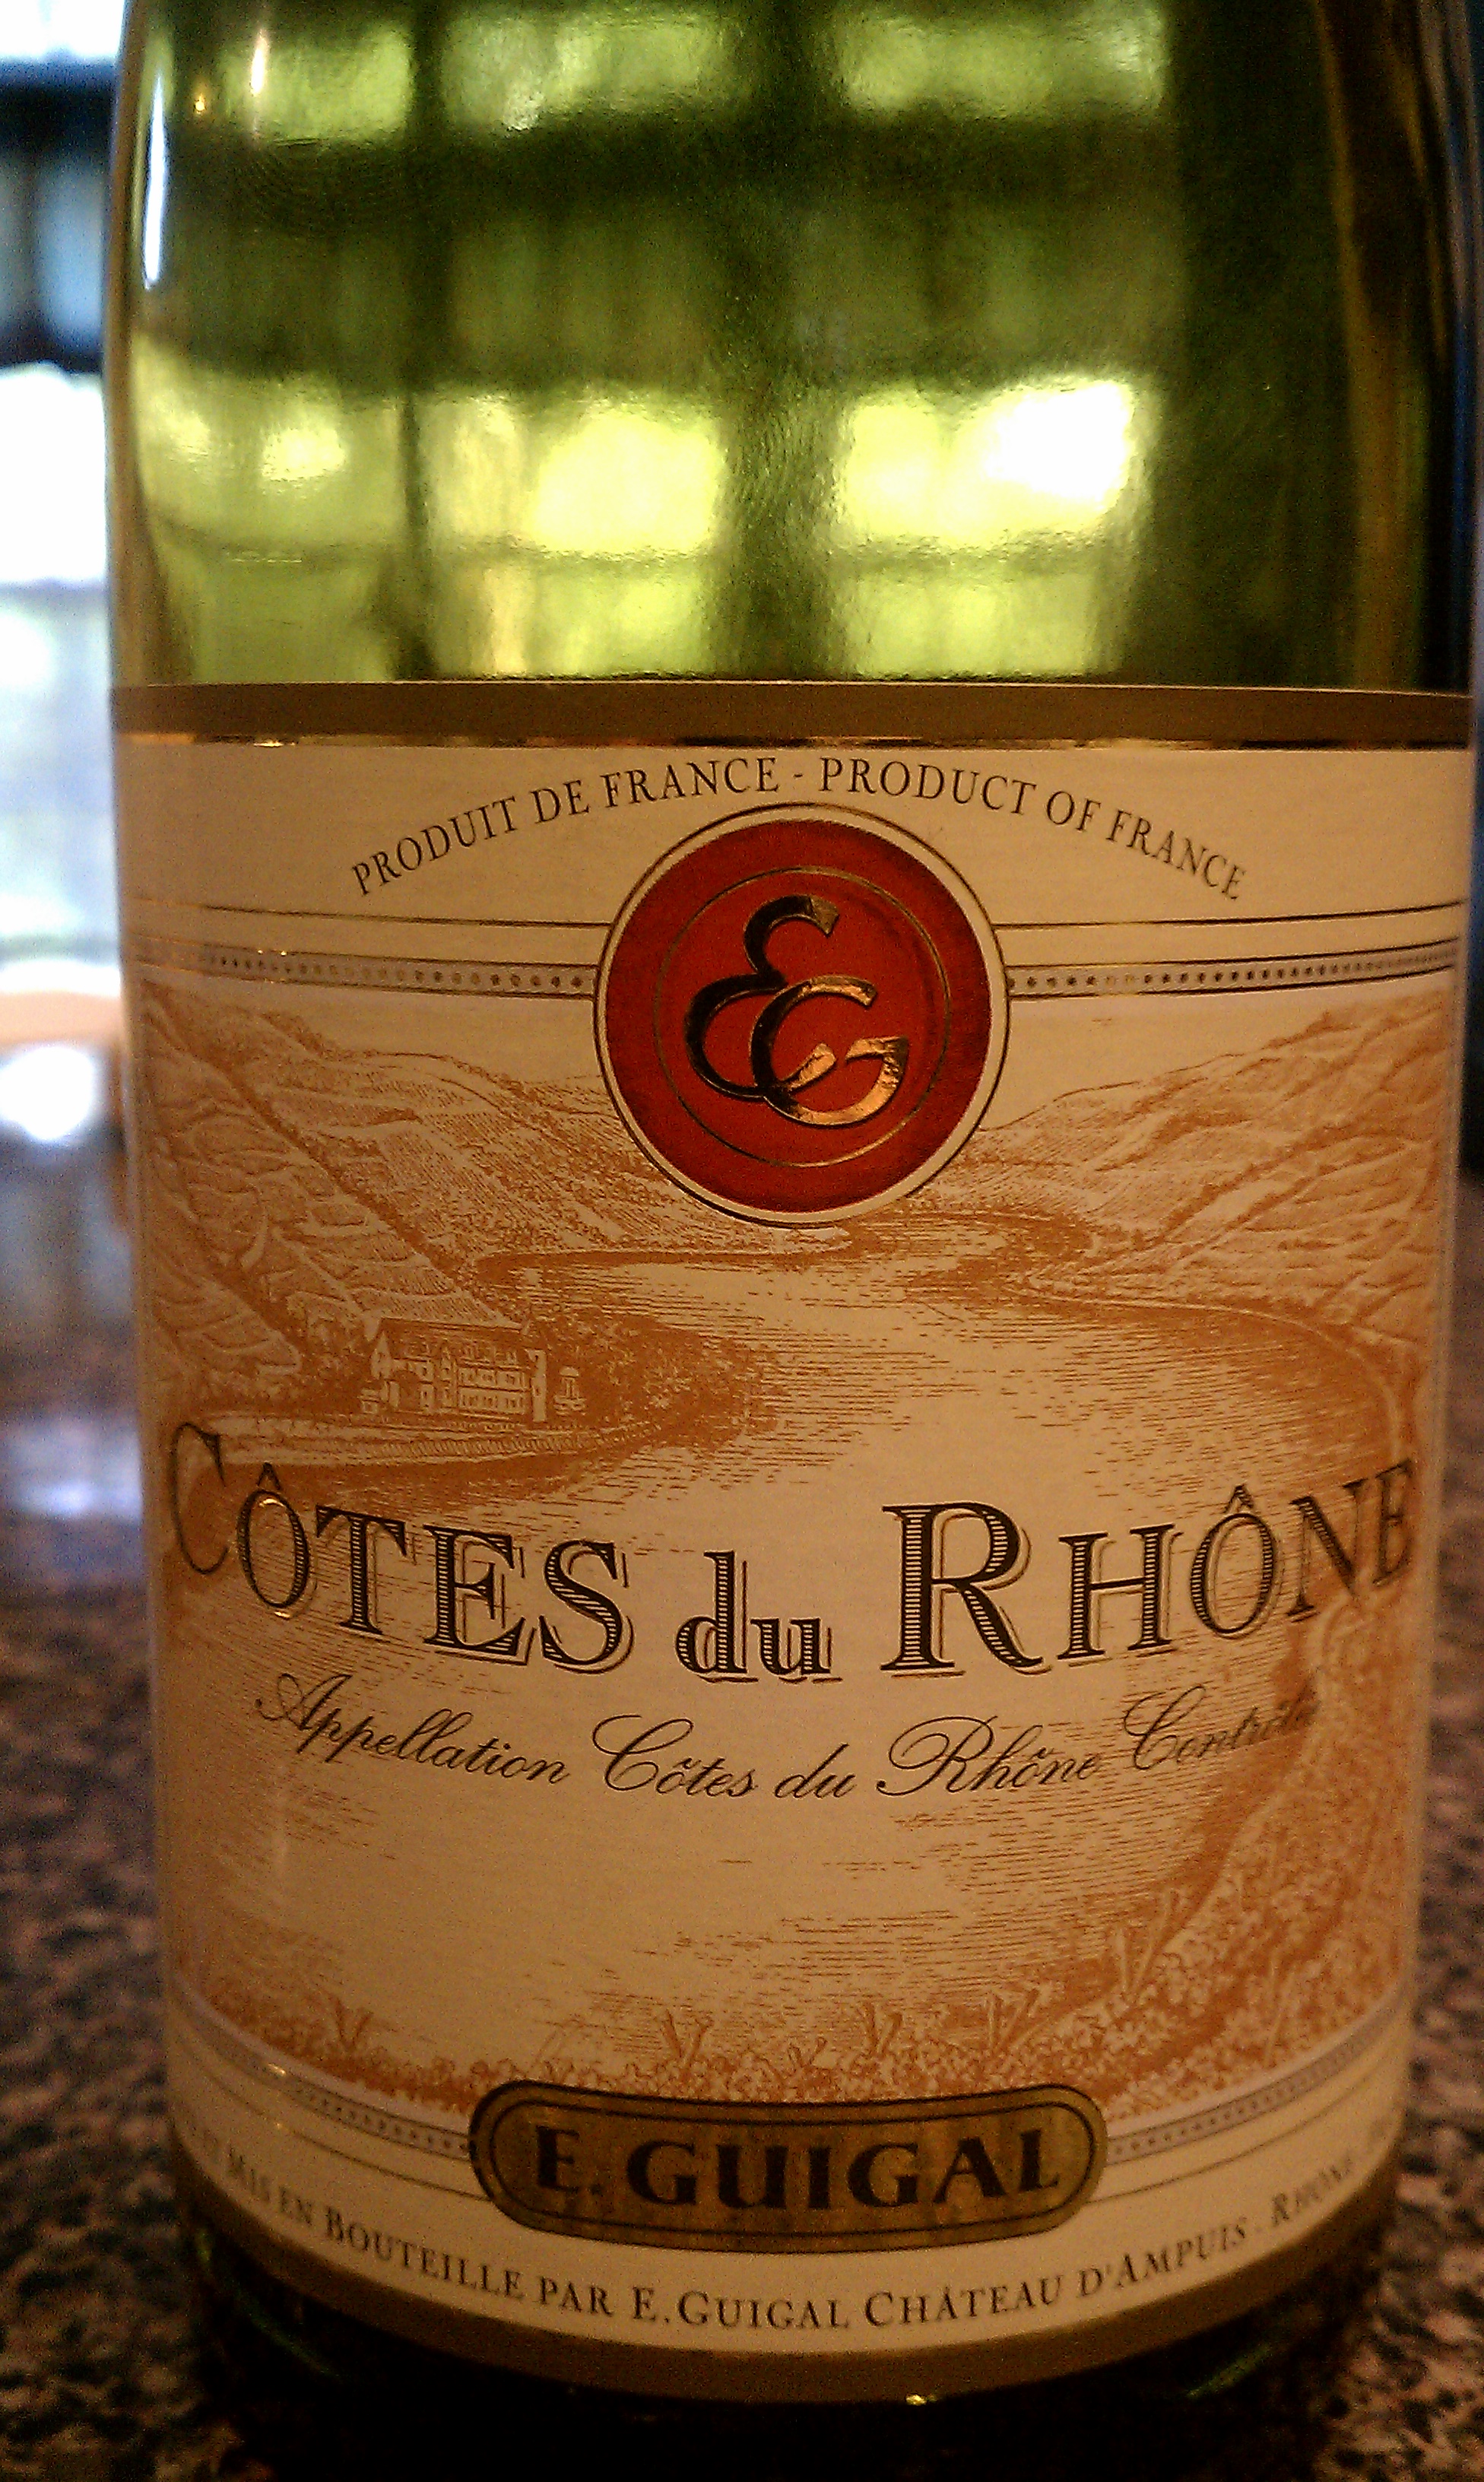 Guigal Cotes du Rhone Rouge 2006